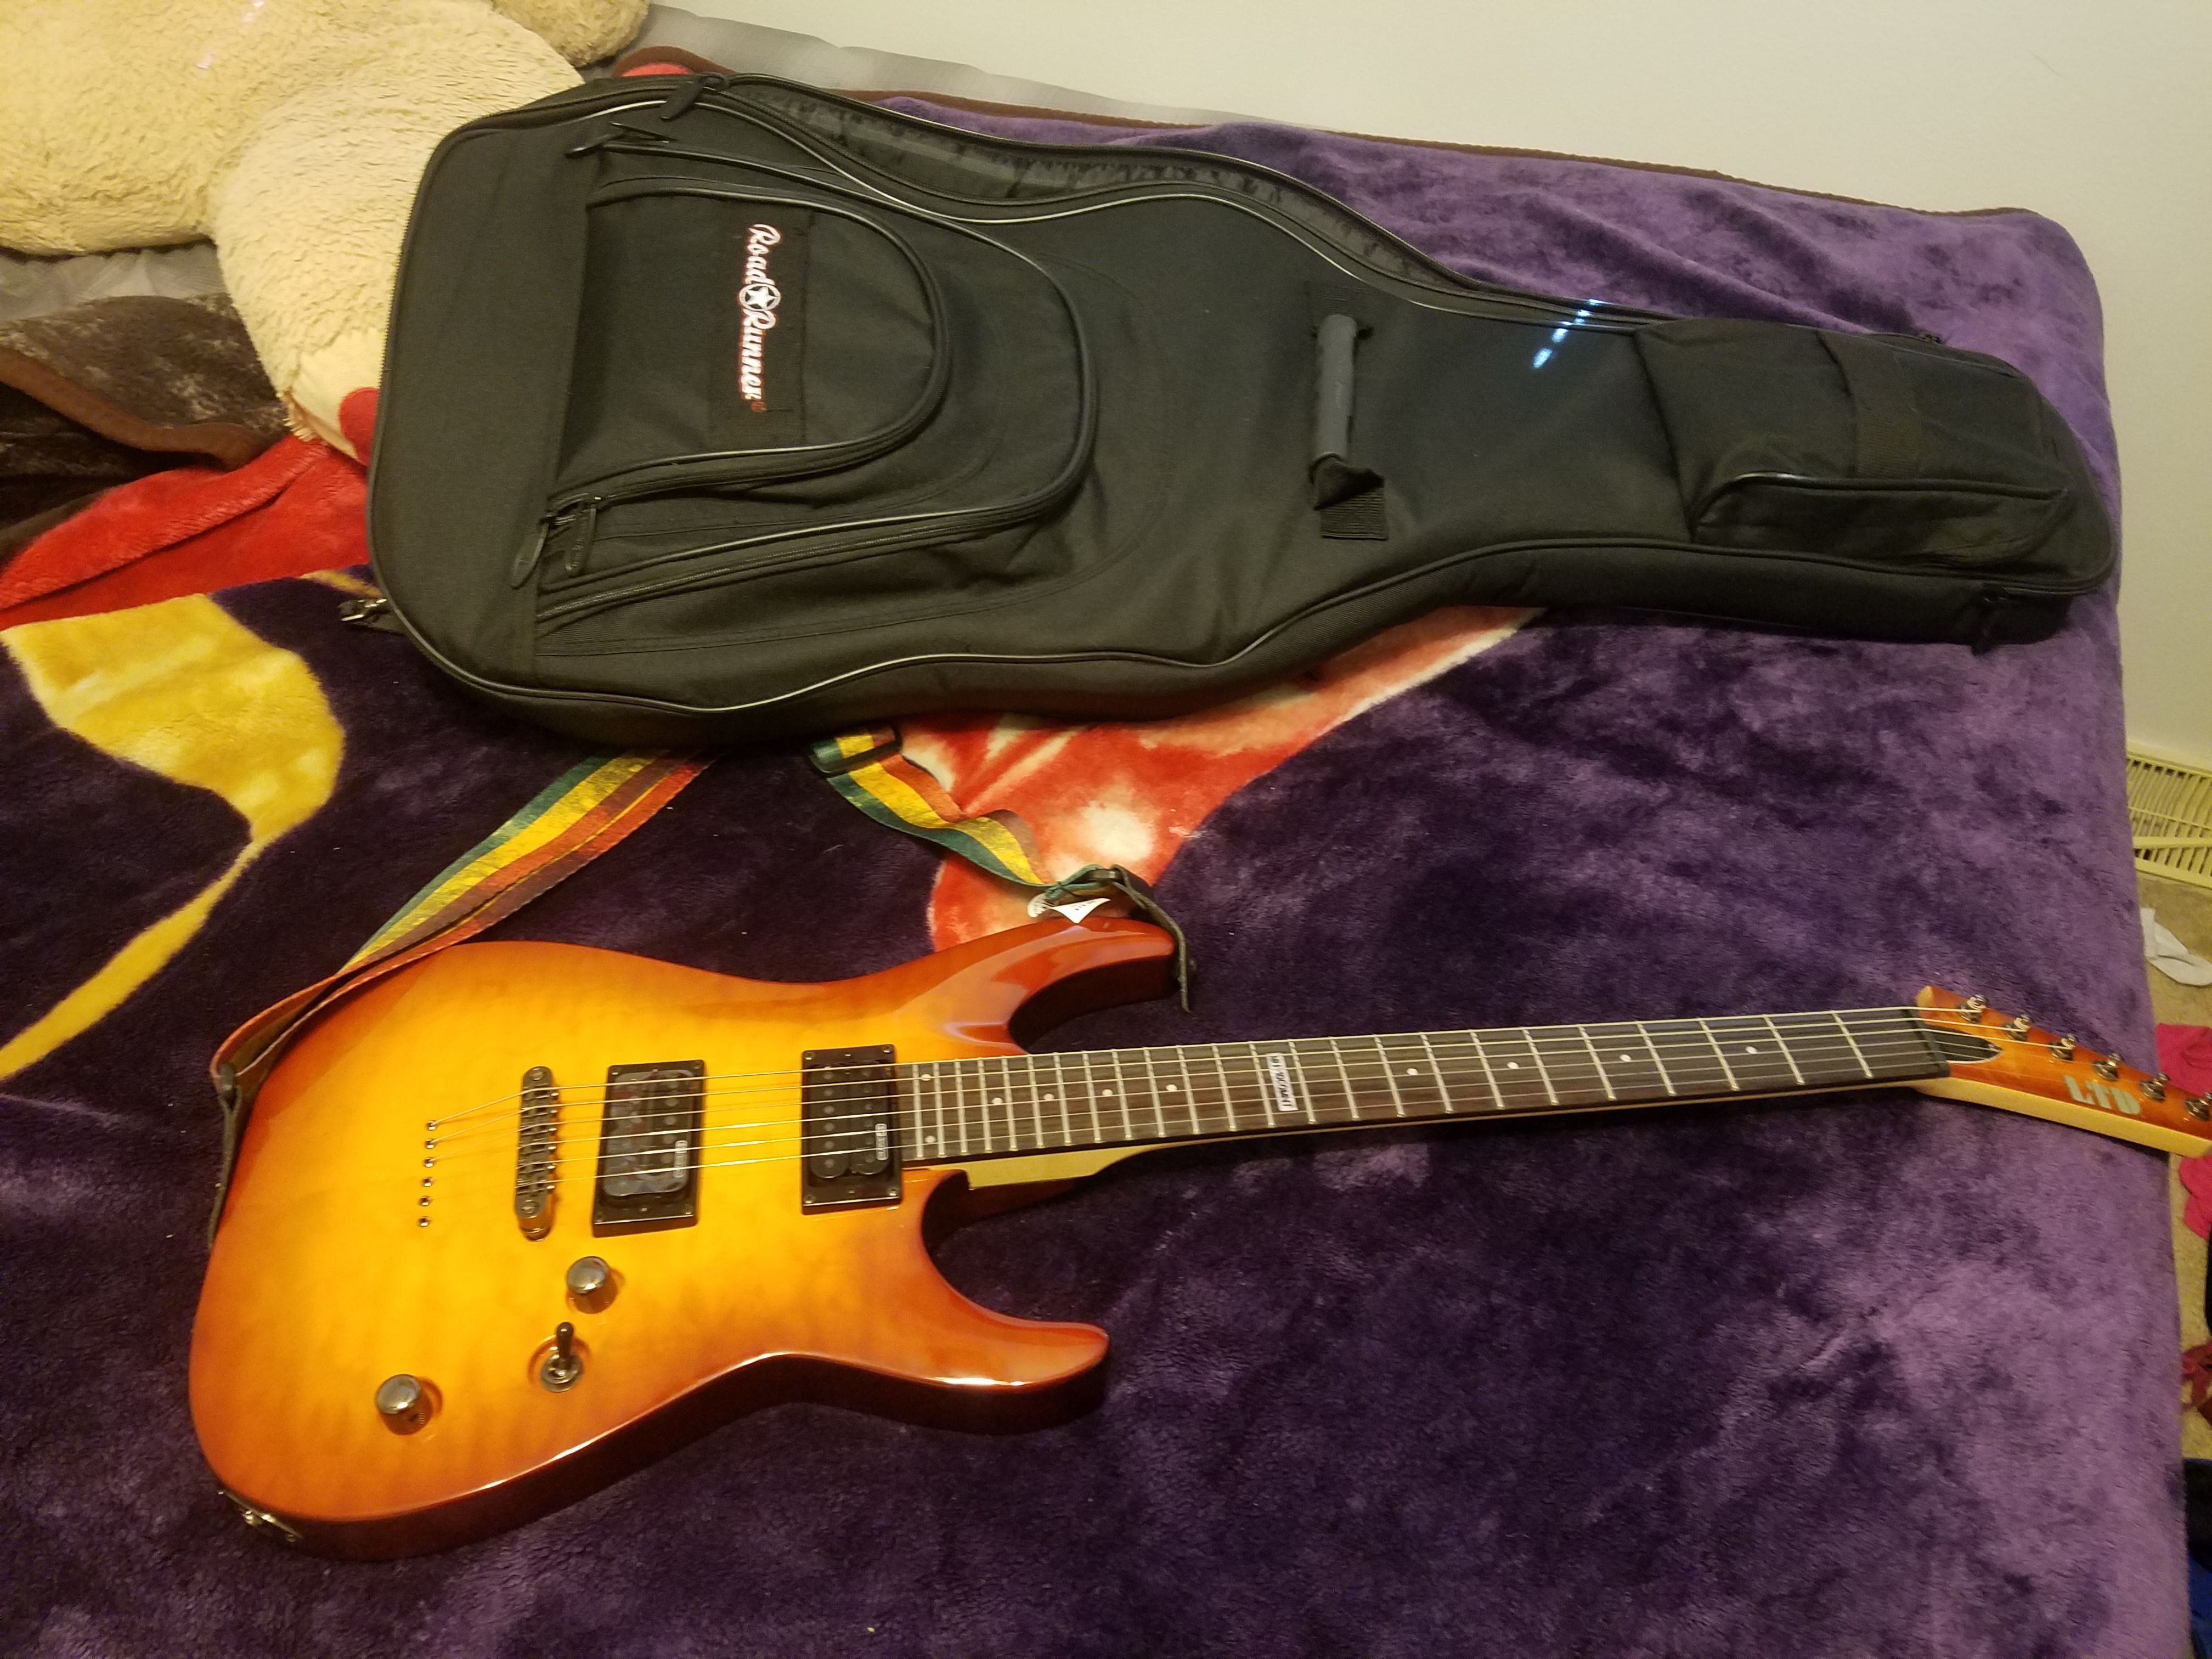 Brand new ltd guitar an bag